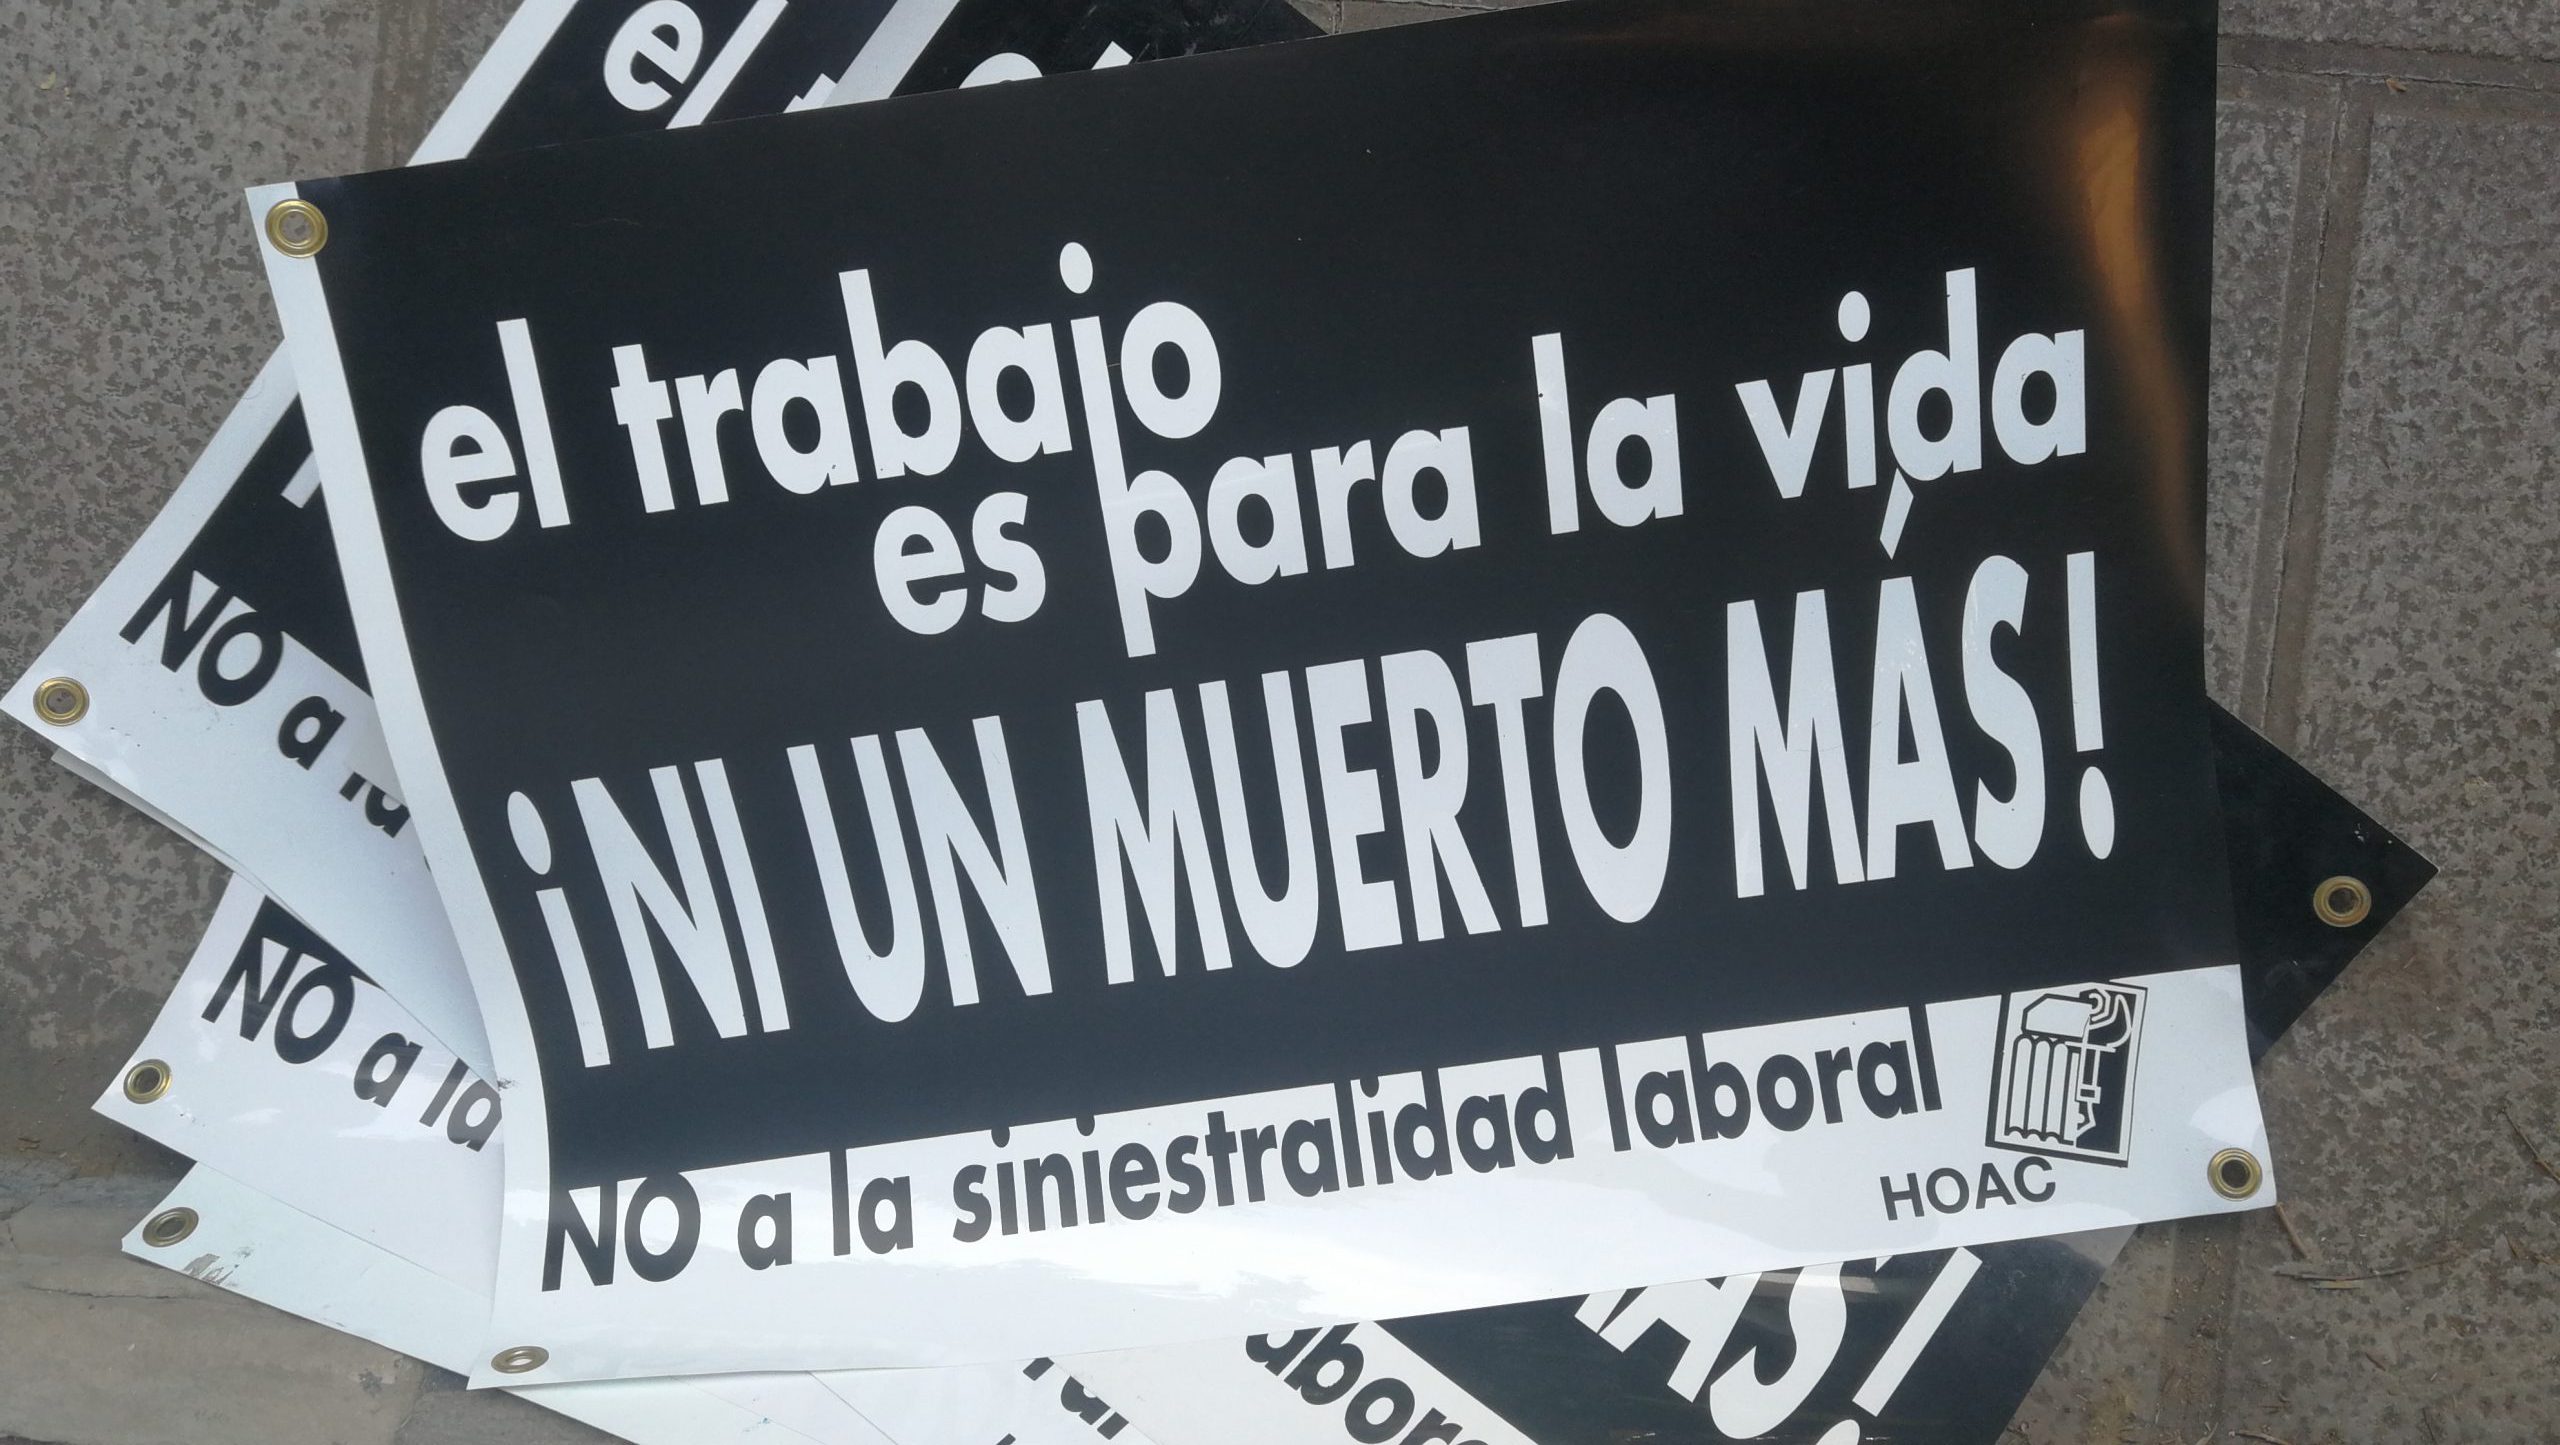 Gesto público contra la siniestralidad laboral en Bilbao